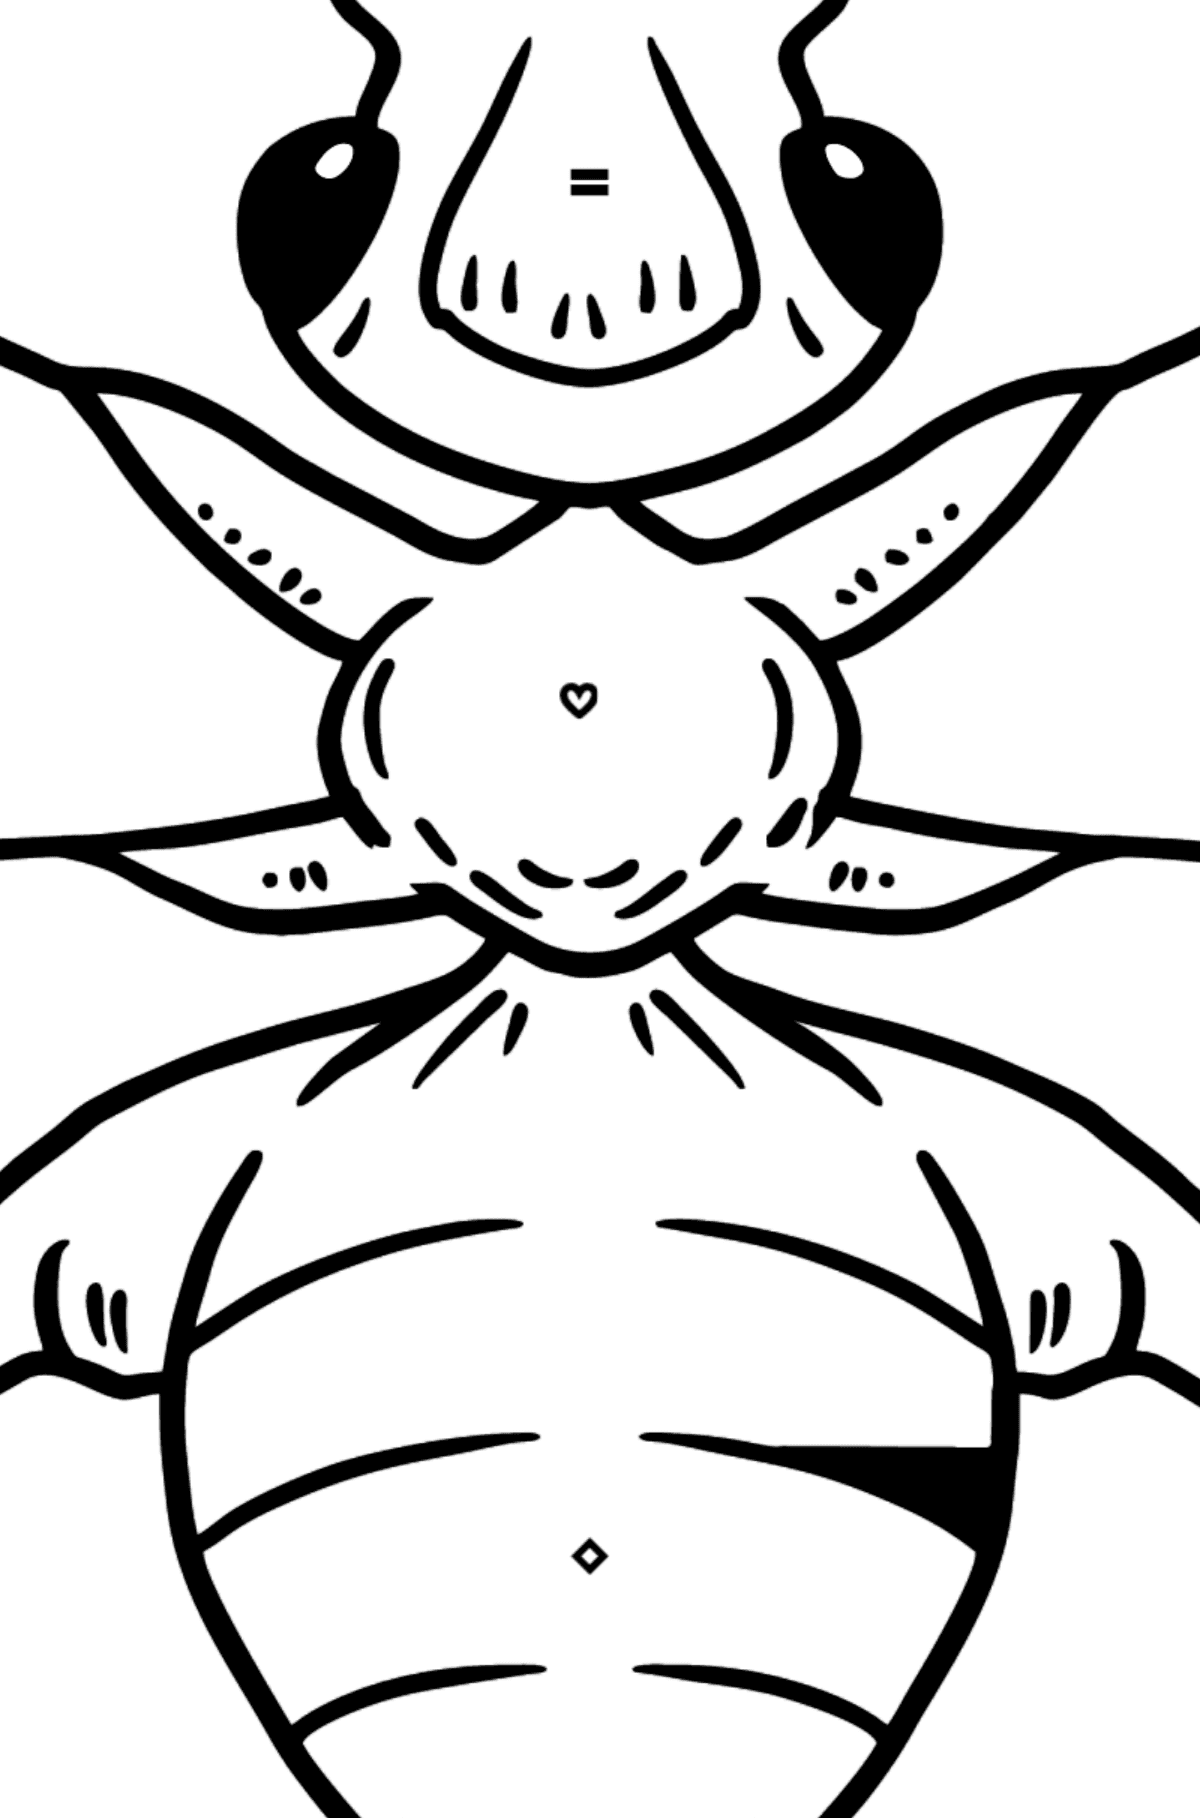 Mrówka kolorowanka dla maluchów - Kolorowanie według symboli i figur geometrycznych dla dzieci